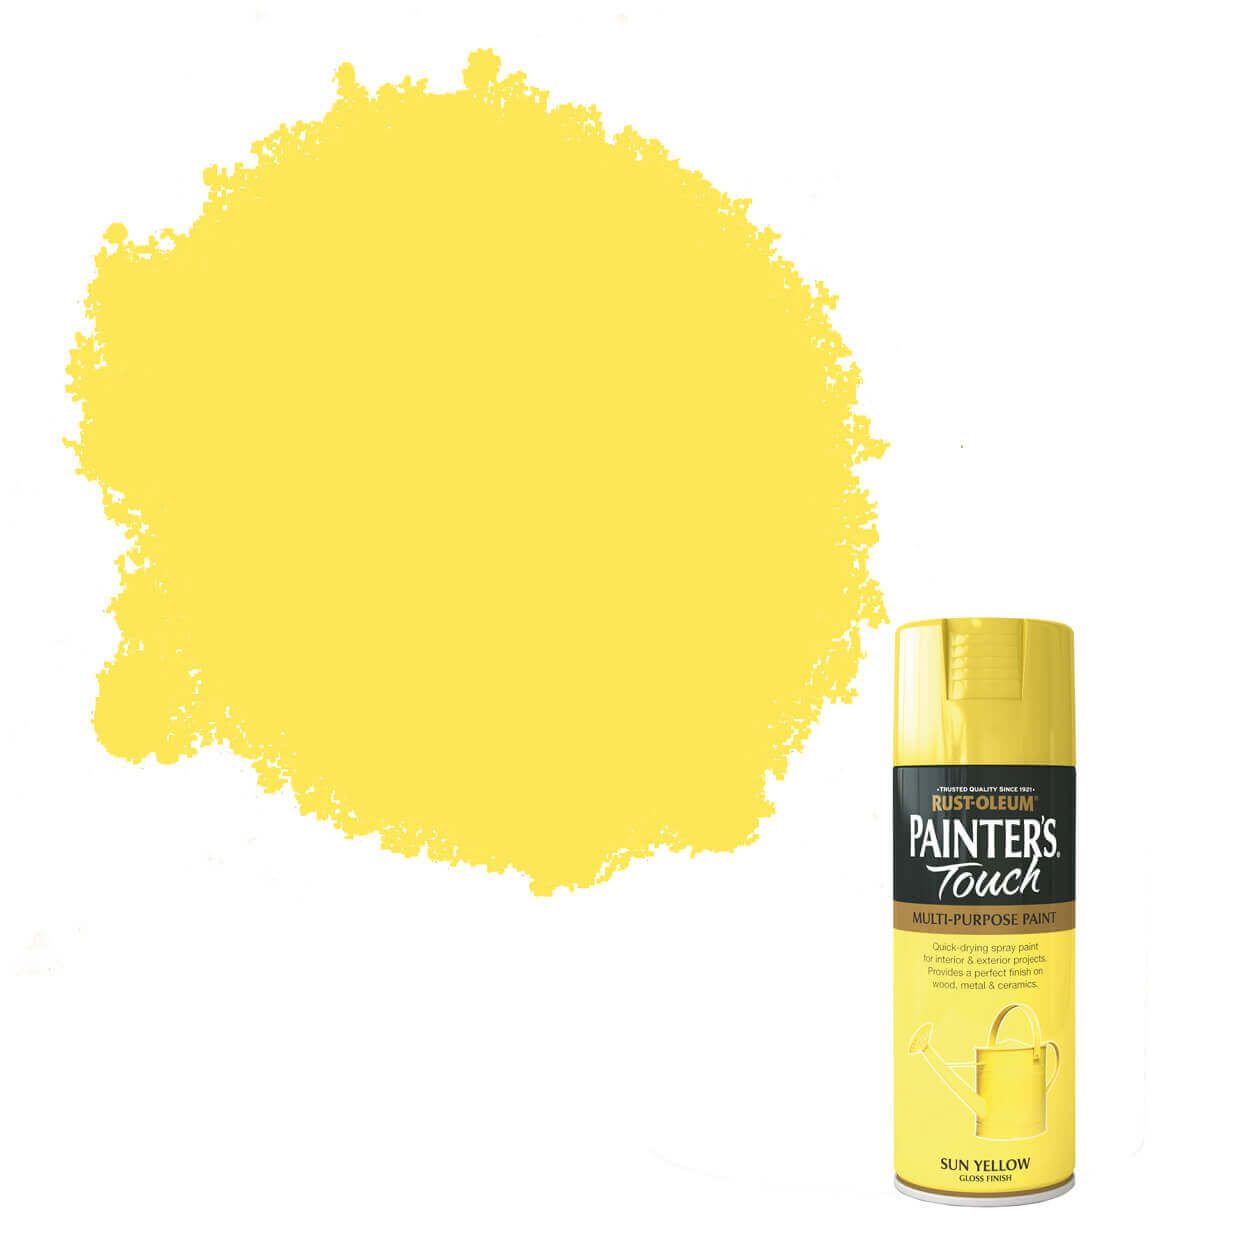 Rust-Oleum Painter's Touch Sun Yellow 400ml